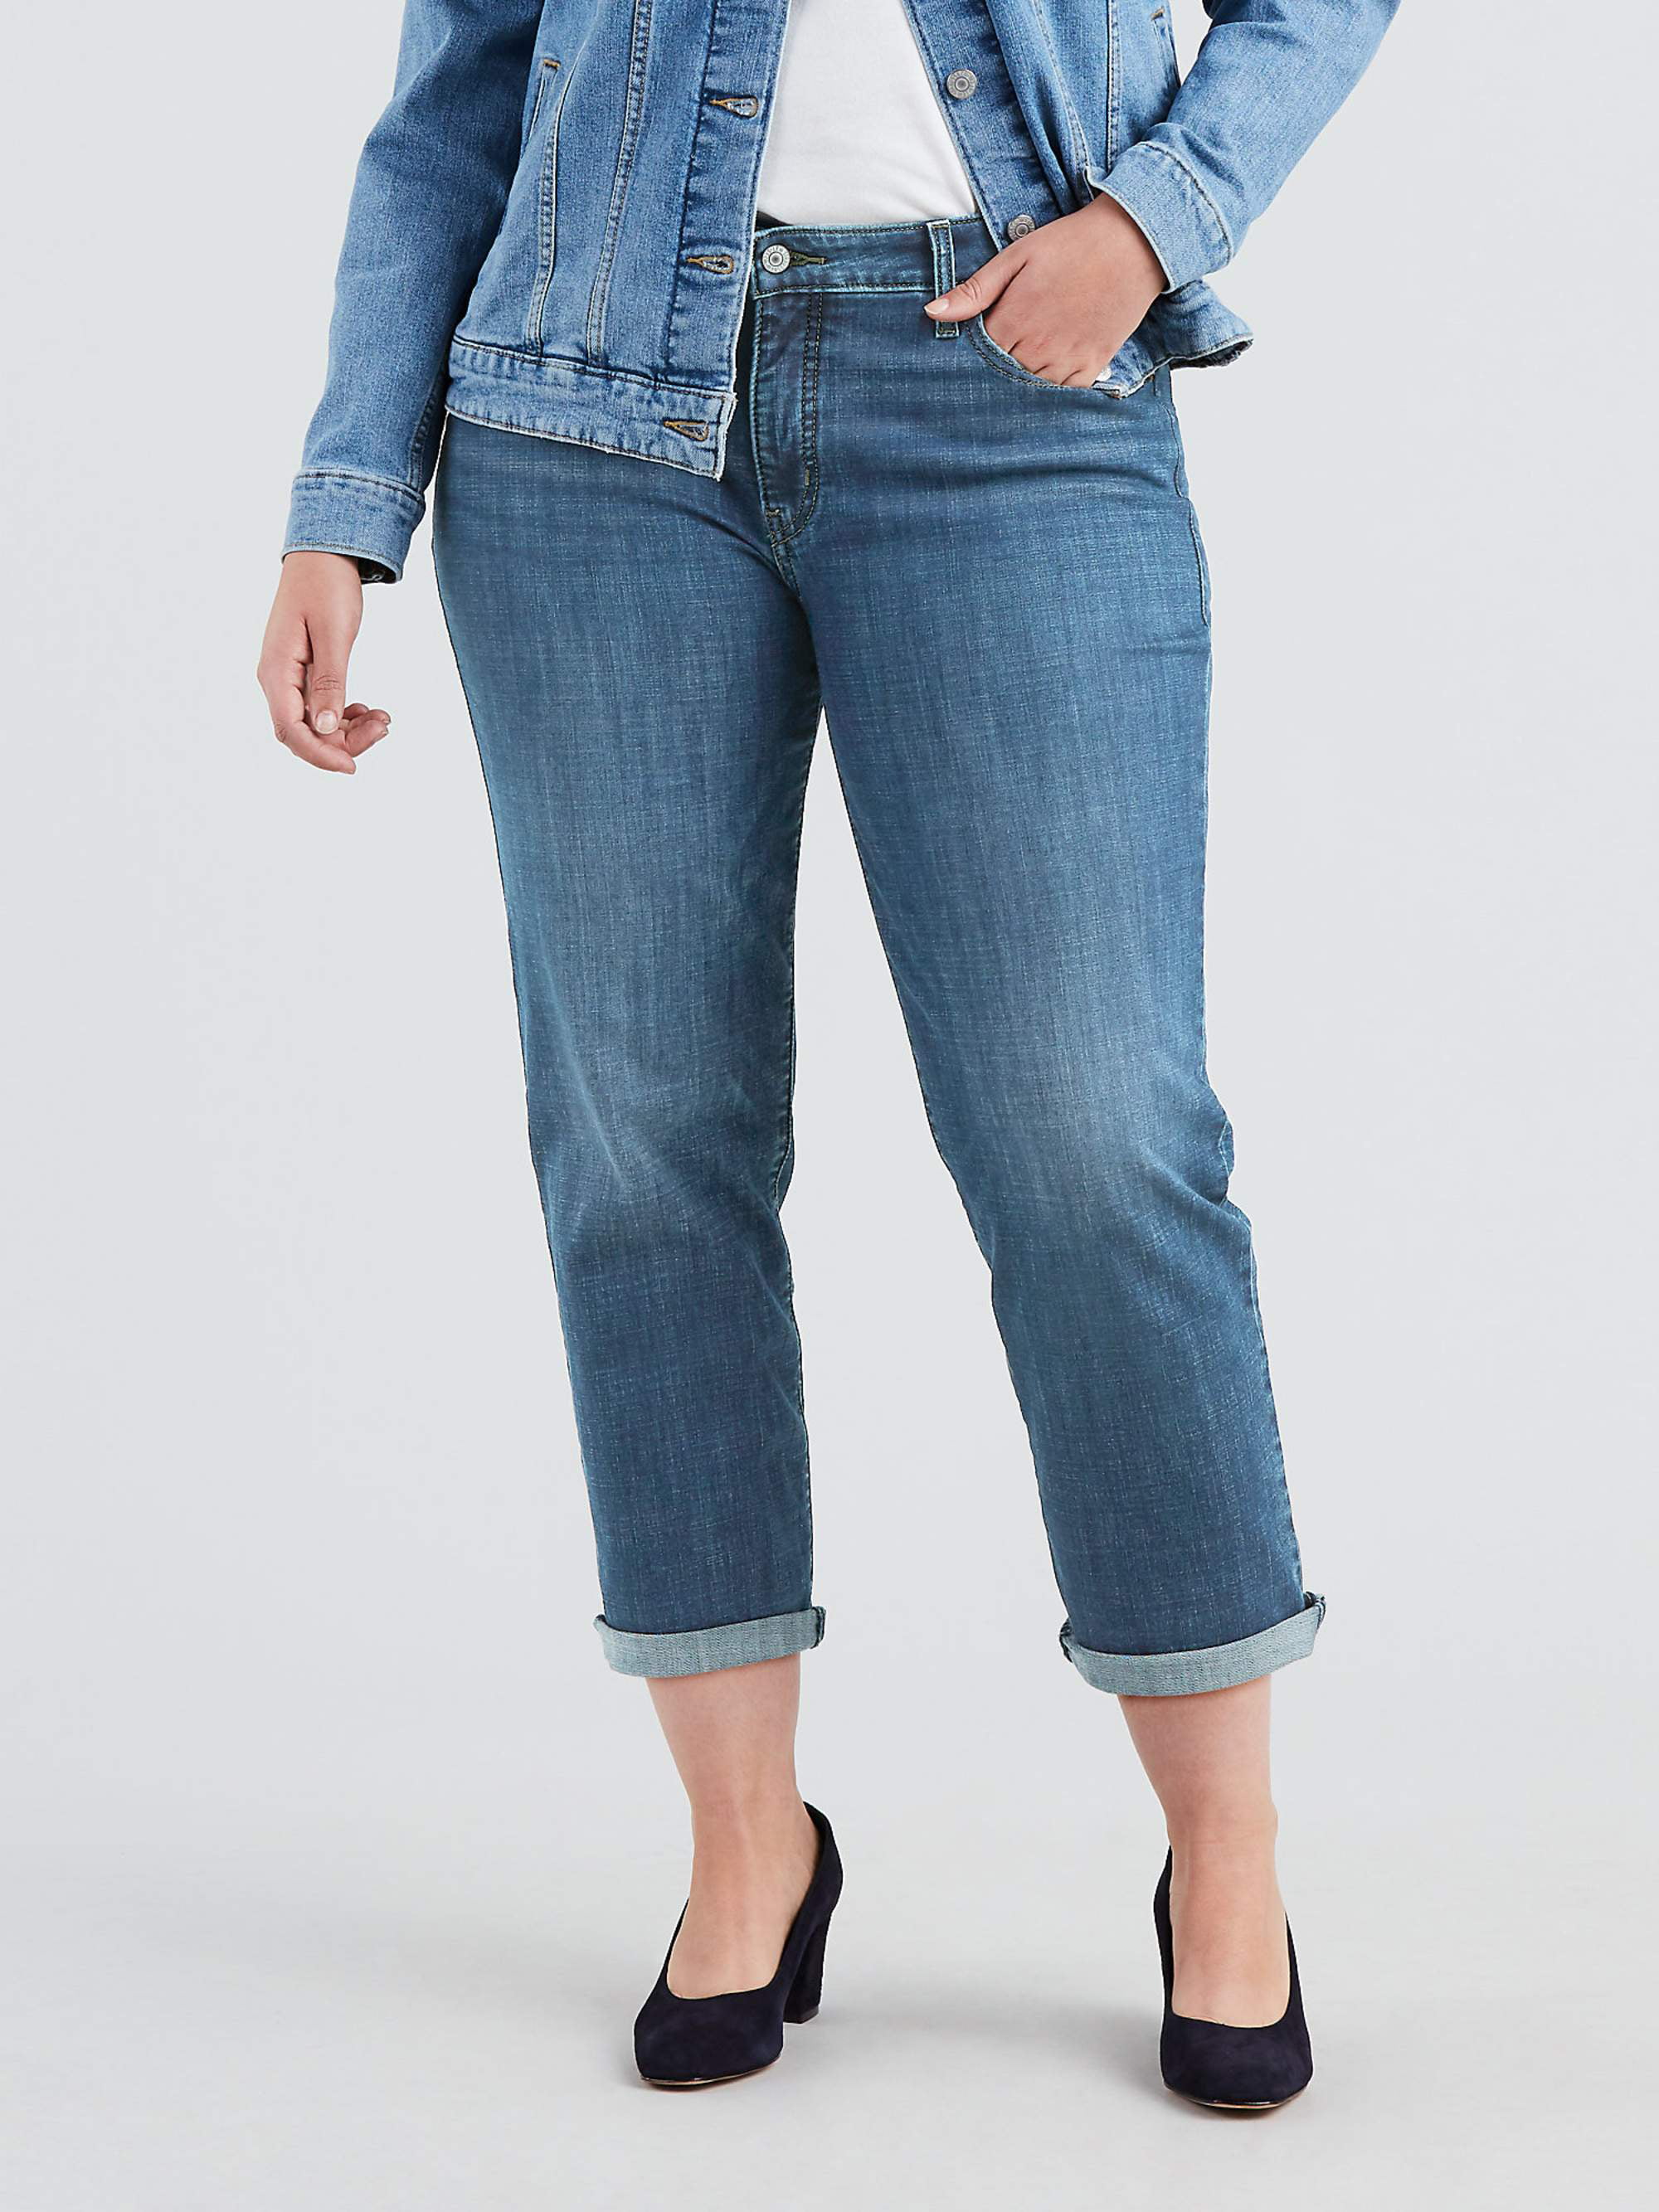 Levis Women's Plus Size Mid Rise Boyfriend Jeans 